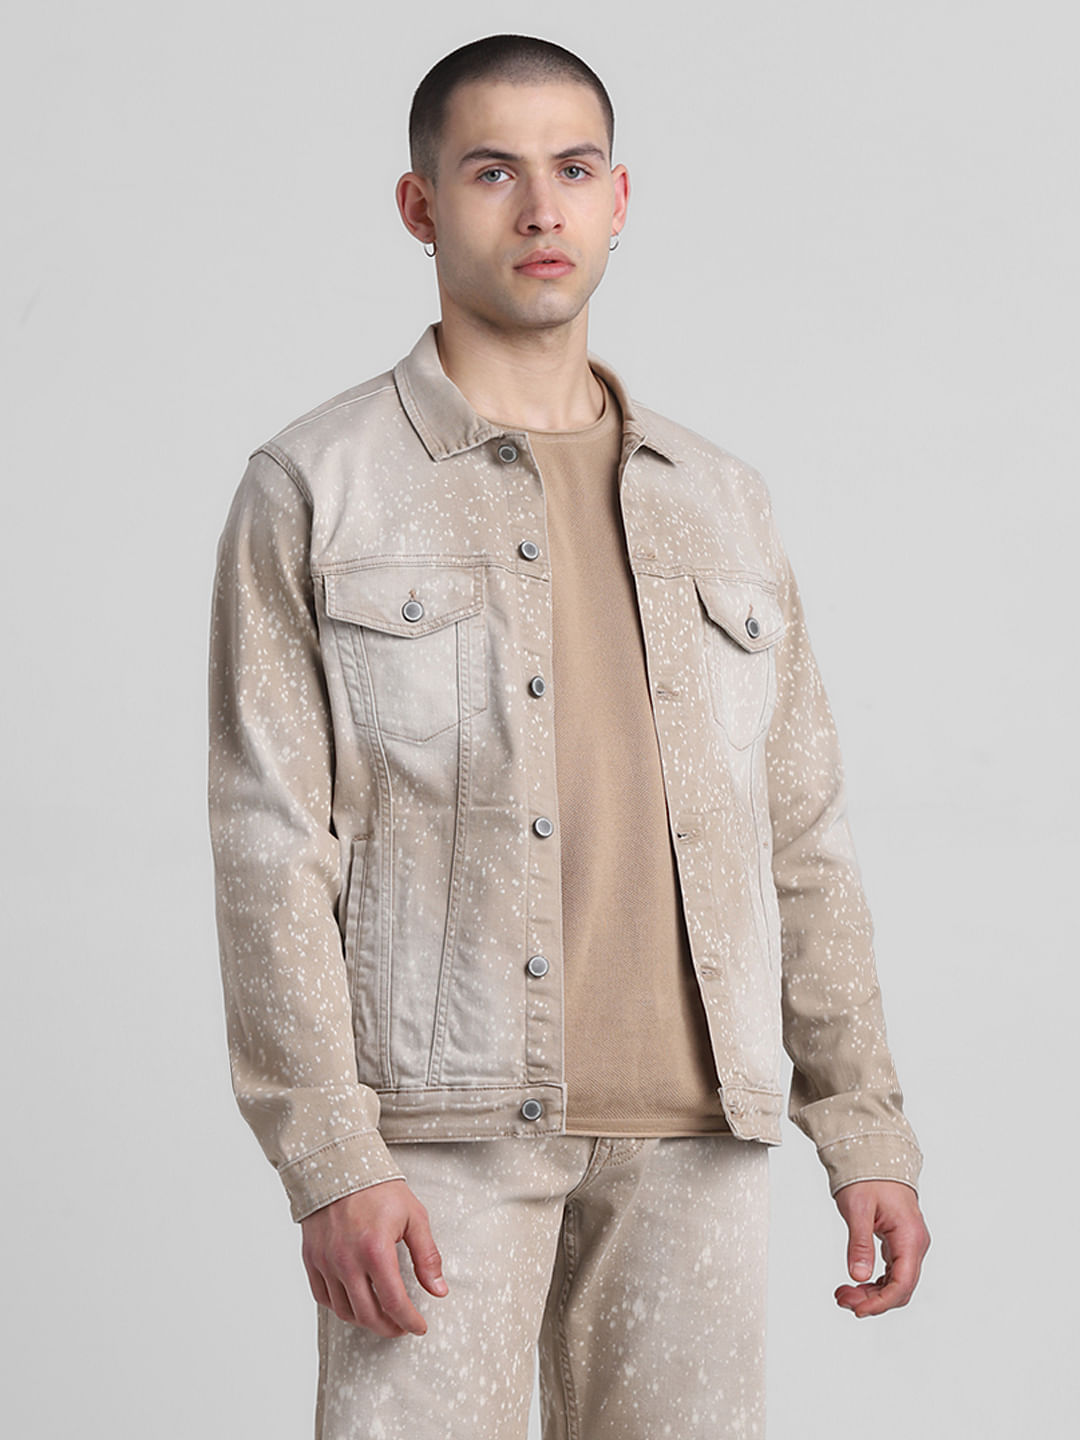 Jackets & Coats | Half Cut Jean Jacket Size Small | Poshmark